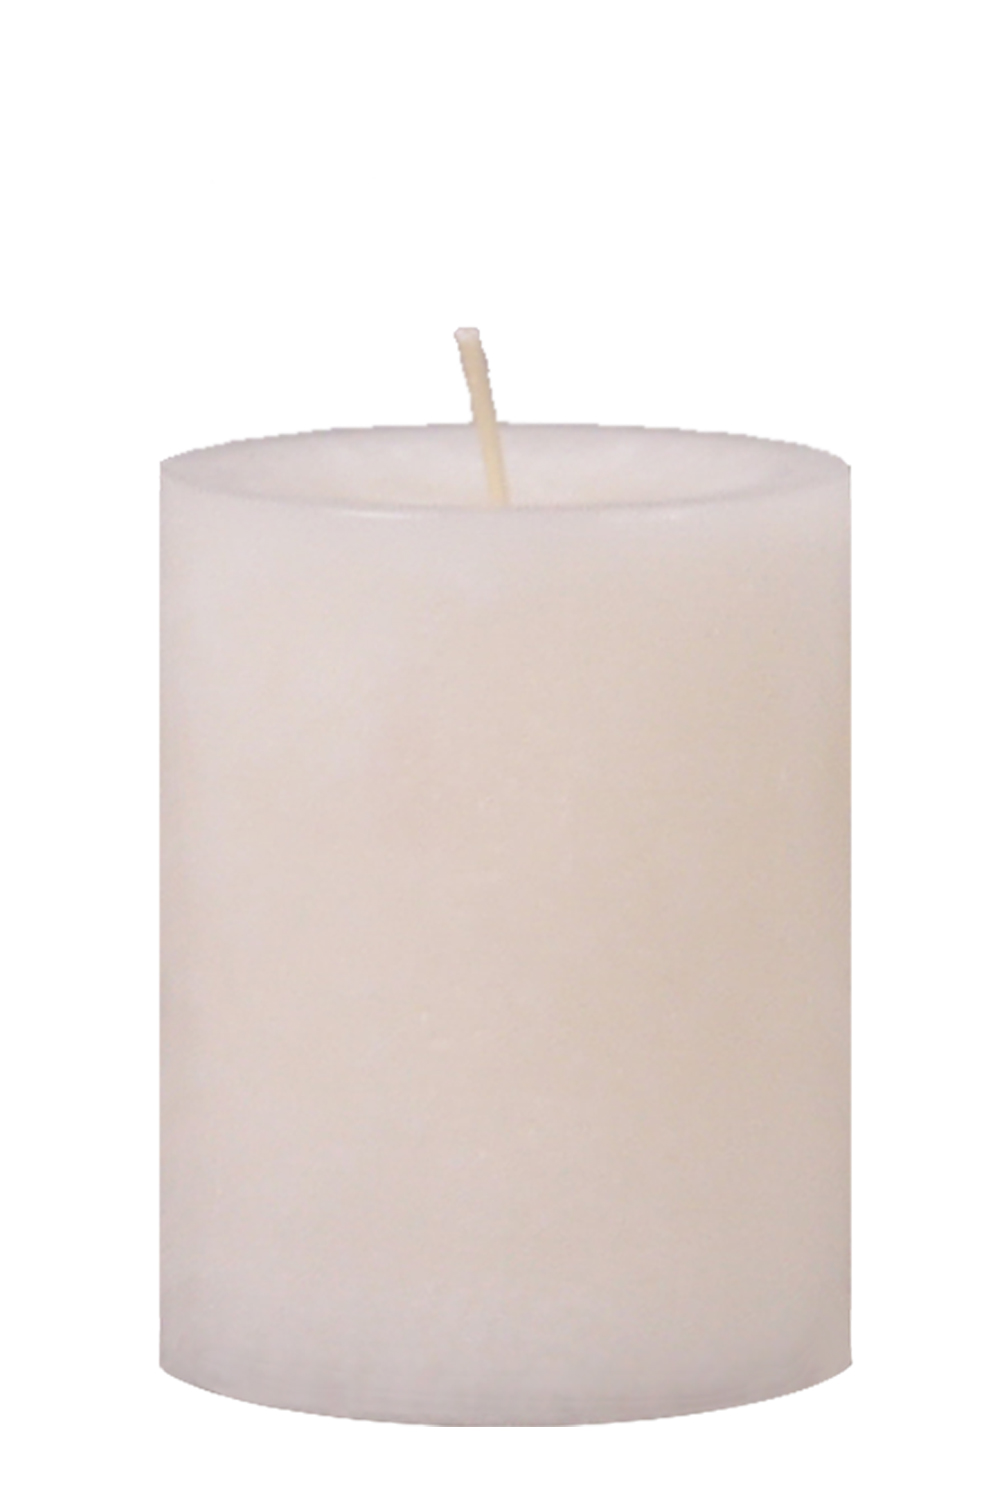 Kerzen für Adventskranz - Trend-Stumpen wollweiß